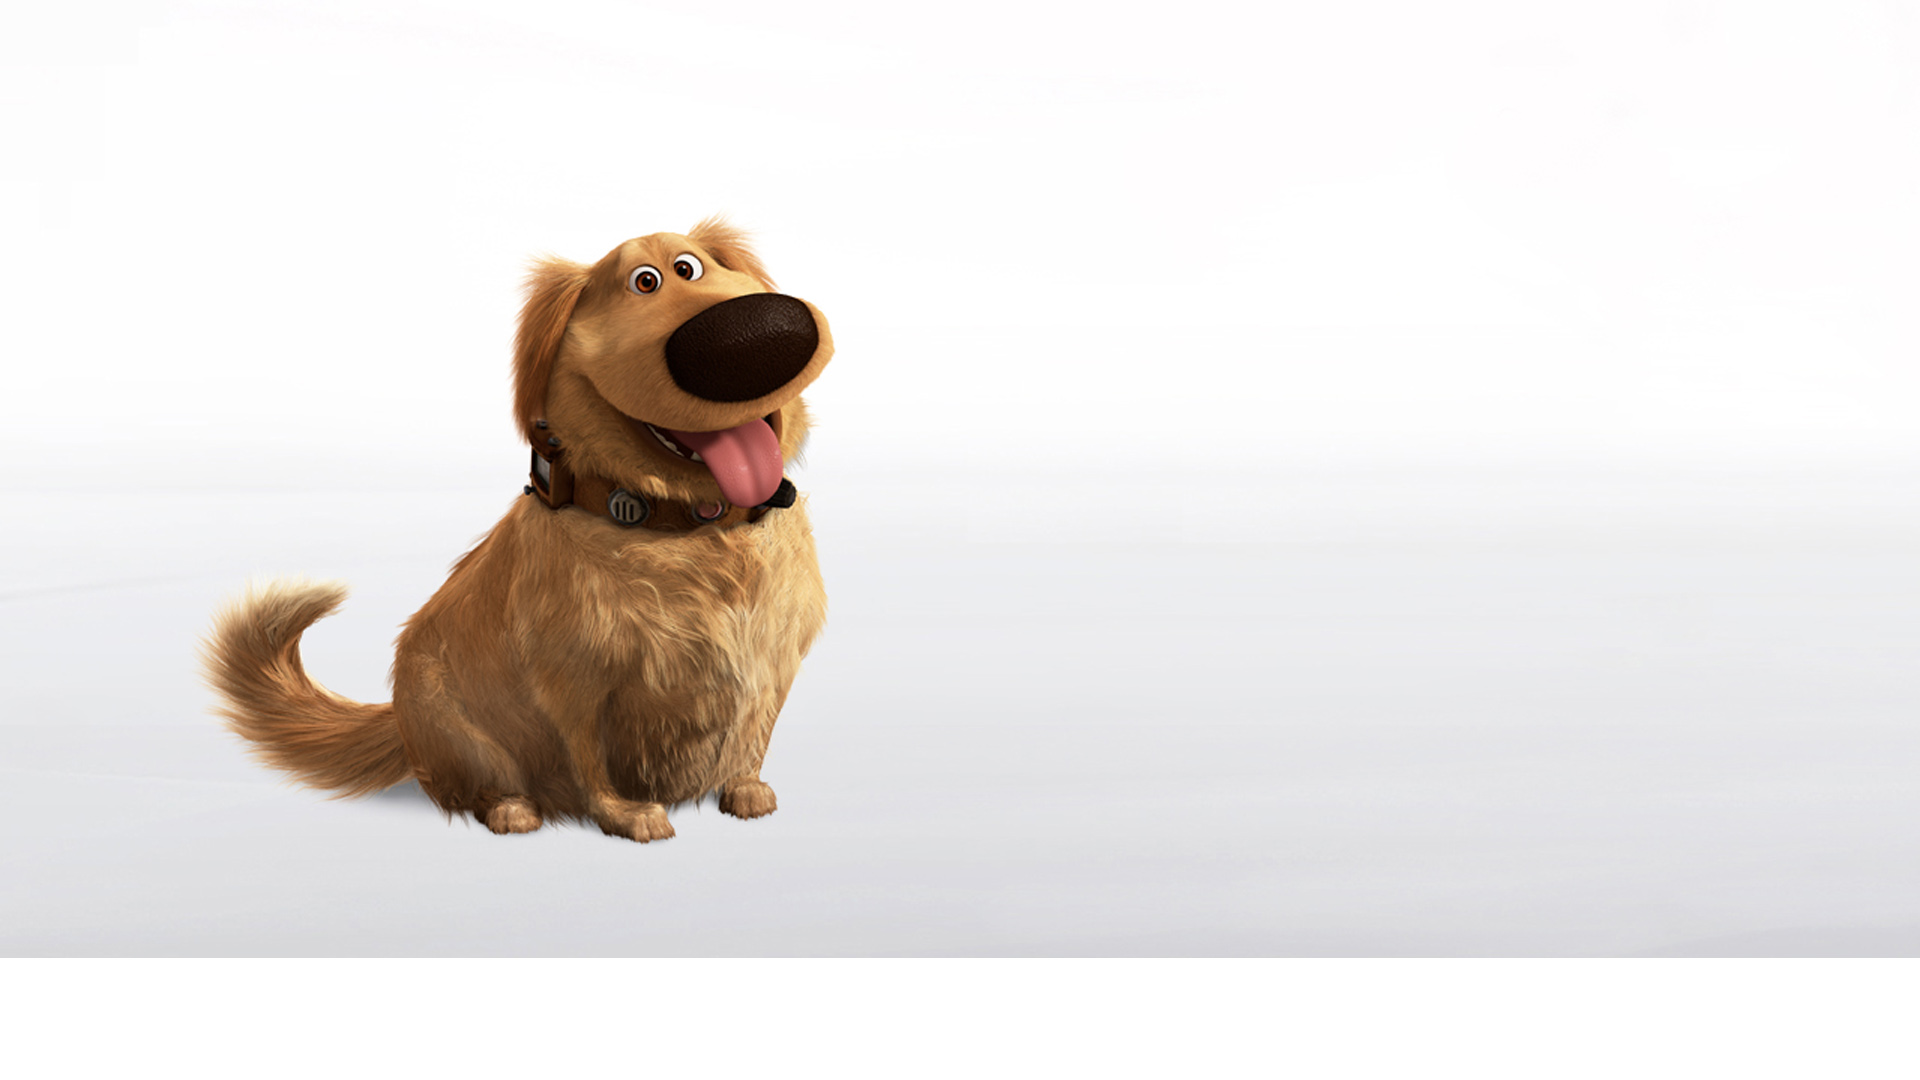 Gracias a Snapchat varios usuarios descubrieron que sus Golden Retrievers o Labradores pueden convertirse en el famoso perro de Pixar